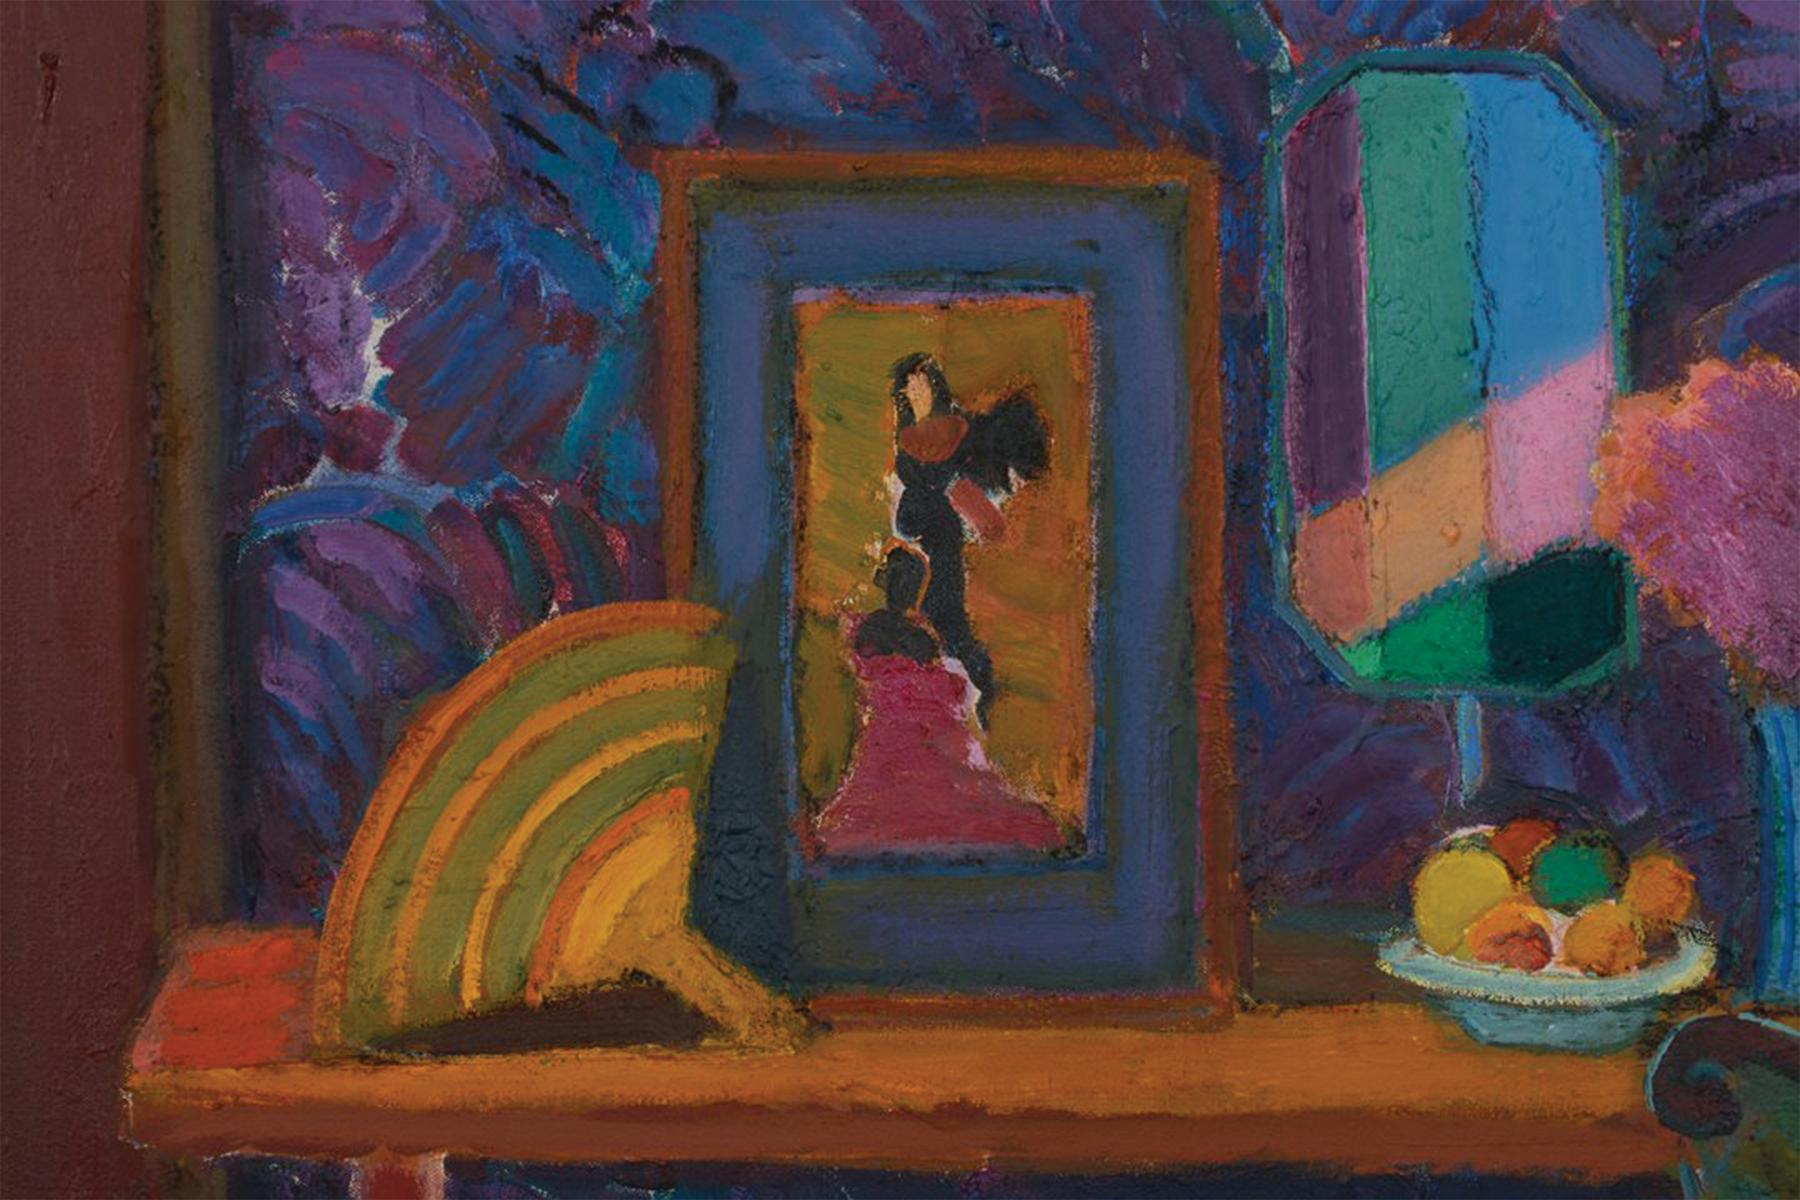 Interieur-Stillleben mit grünem Stuhl, 1996 – Postimpressionistischer Künstler aus Ohio (Post-Impressionismus), Painting, von Joseph O'Sickey